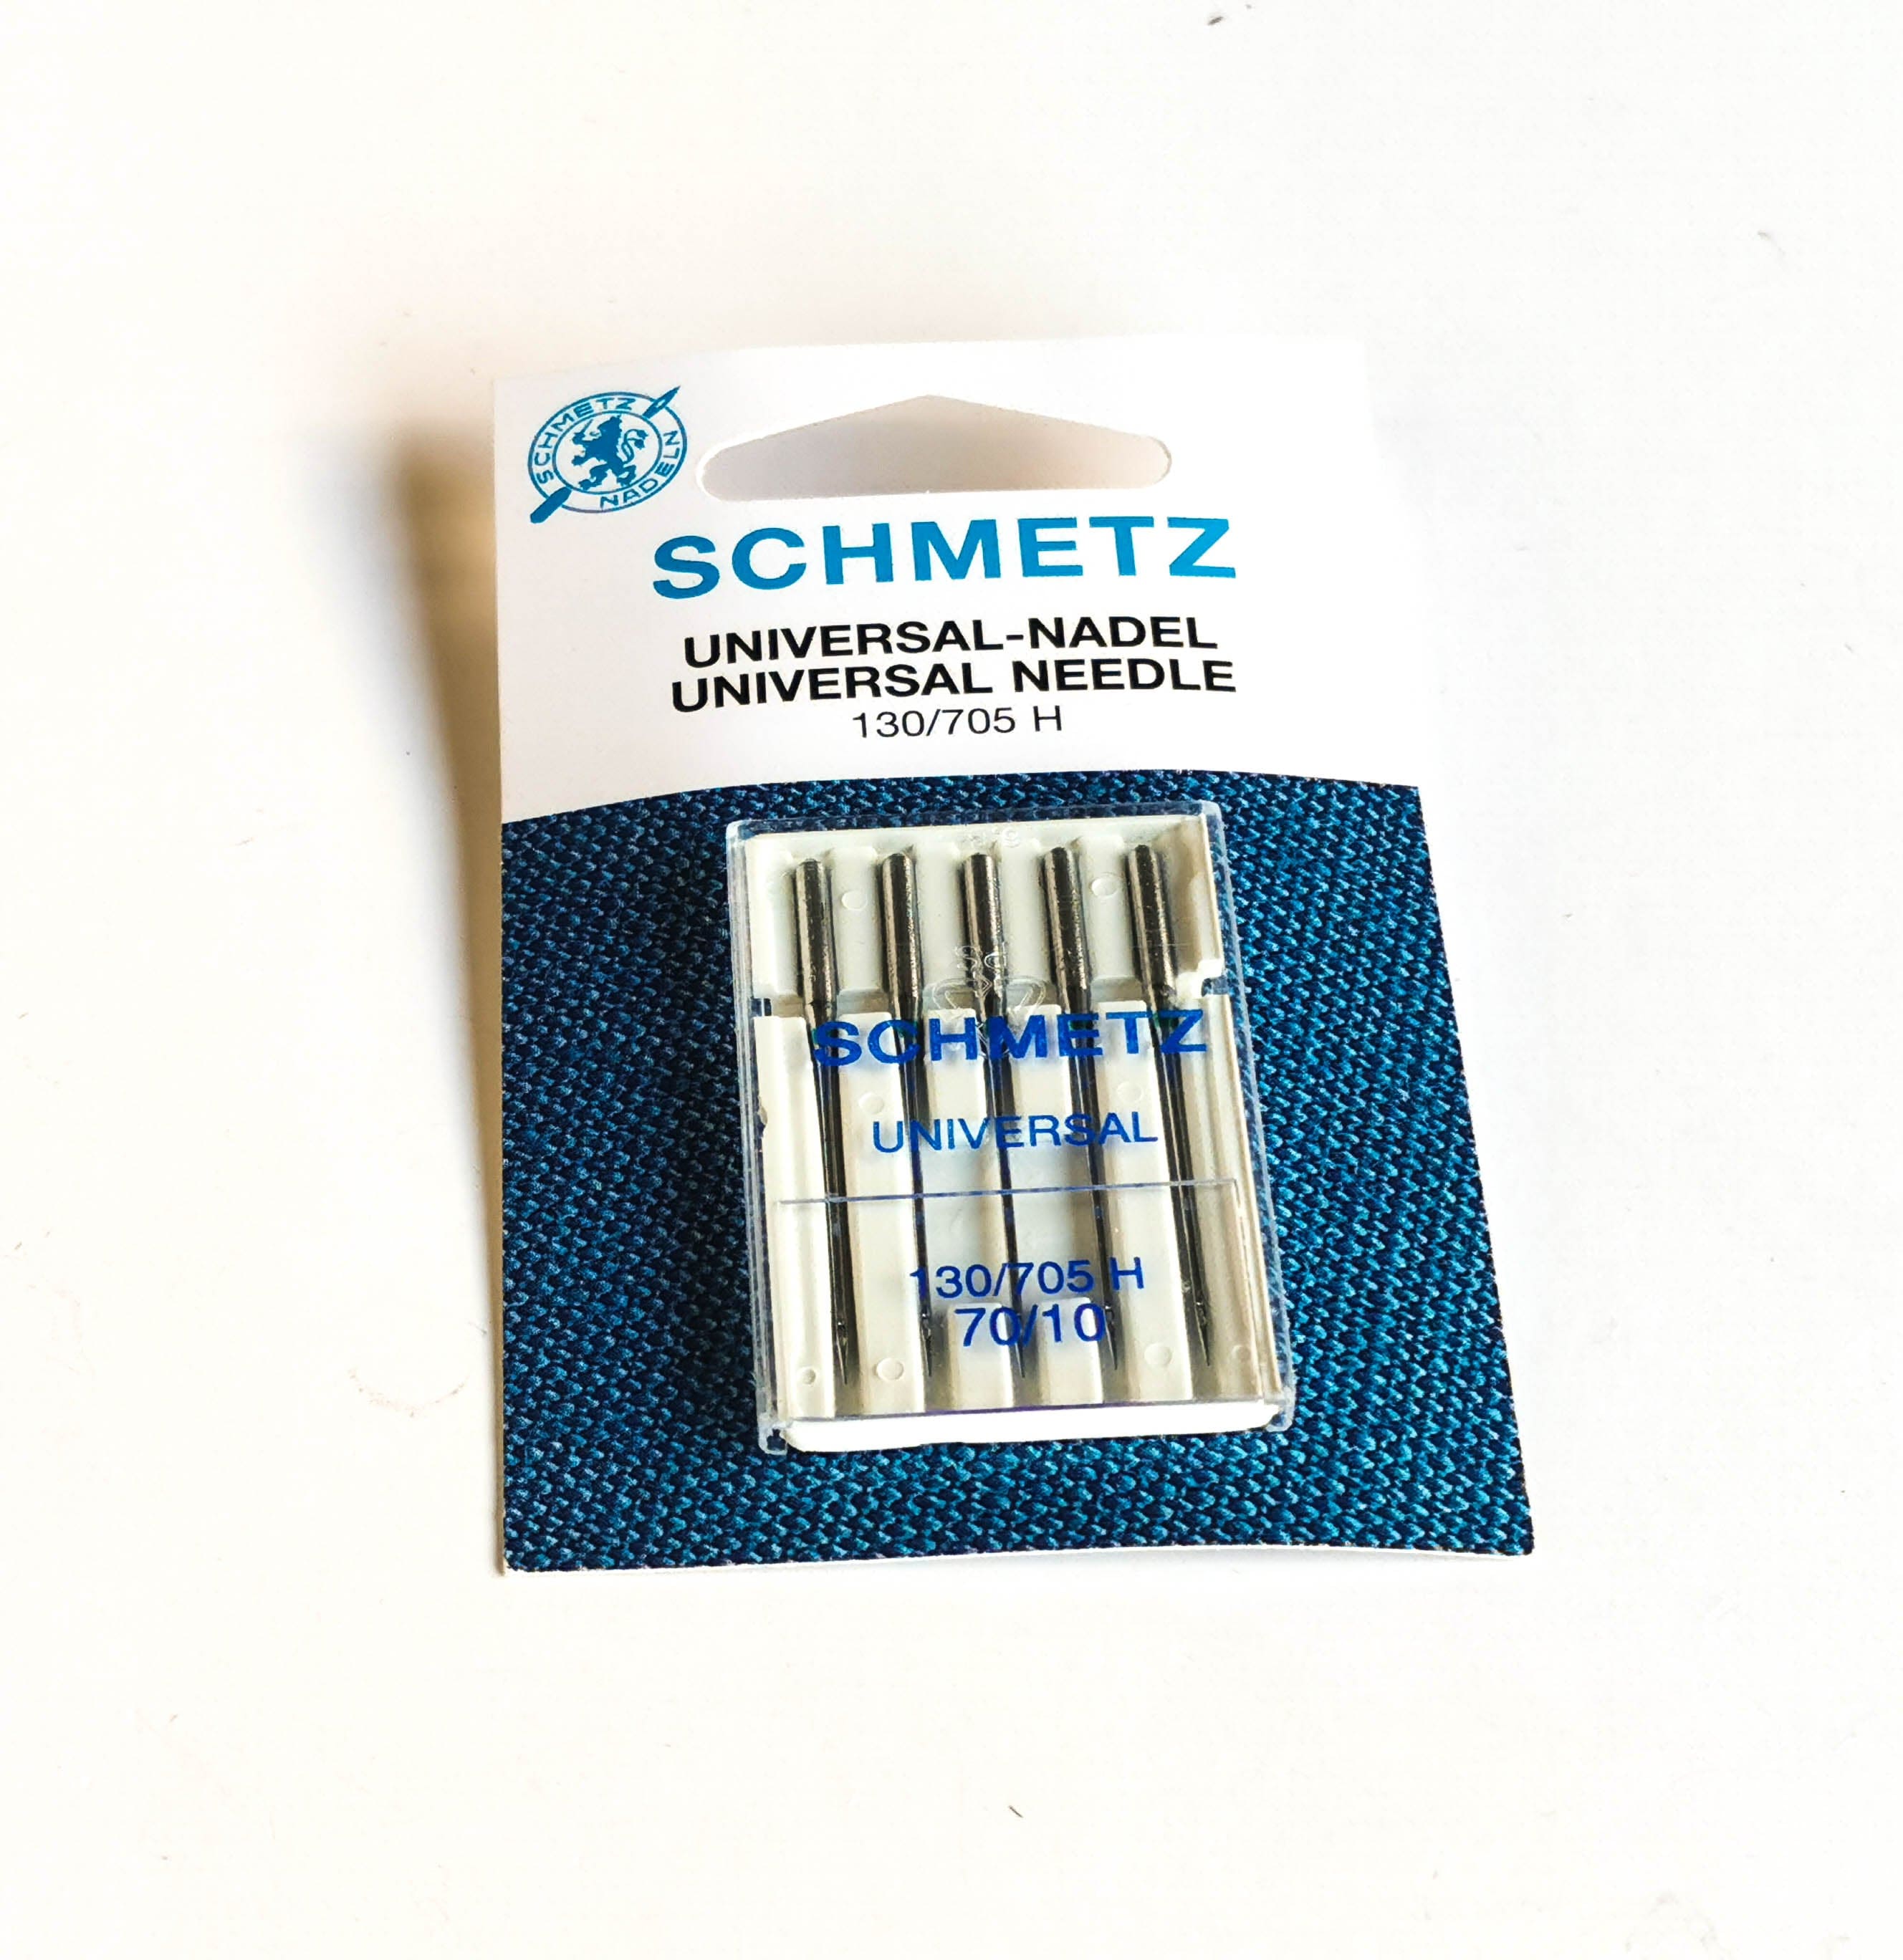 Schmetz Universal Needle 130/705 70/10 - Kiwi Bagineers